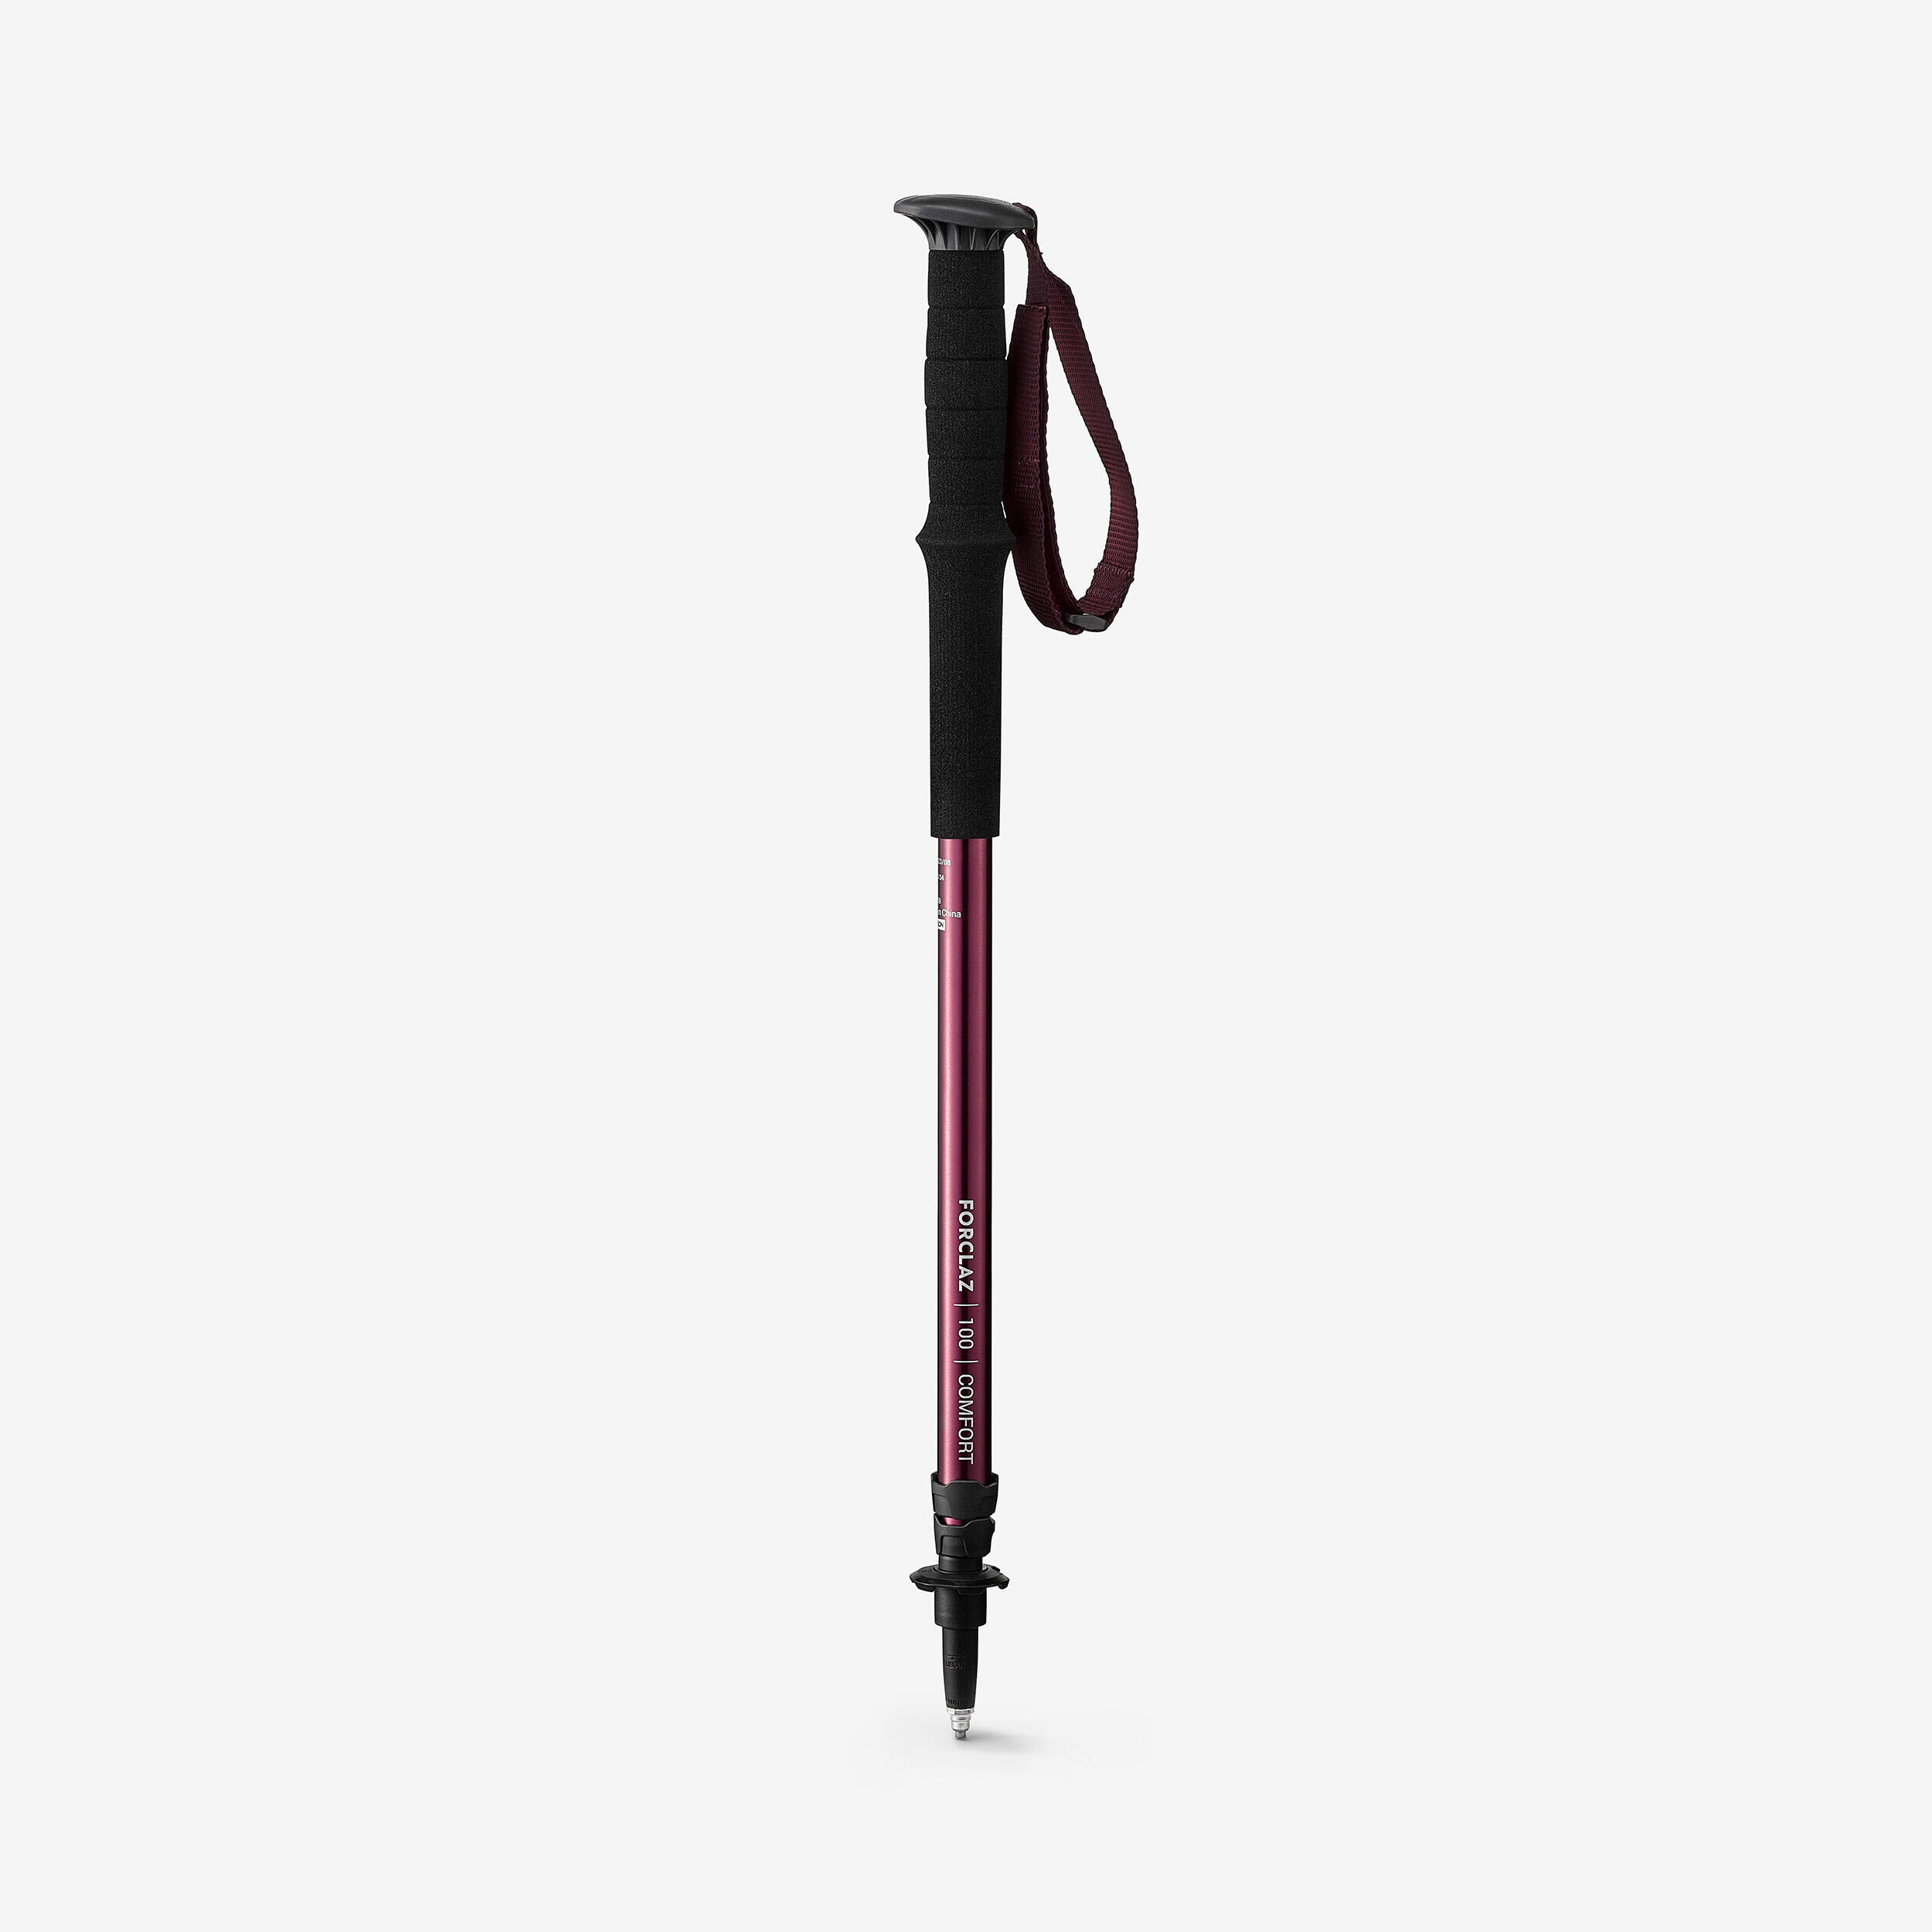 FORCLAZ 1 Easy Adjust Hiking Pole - MT100 Comfort Purple